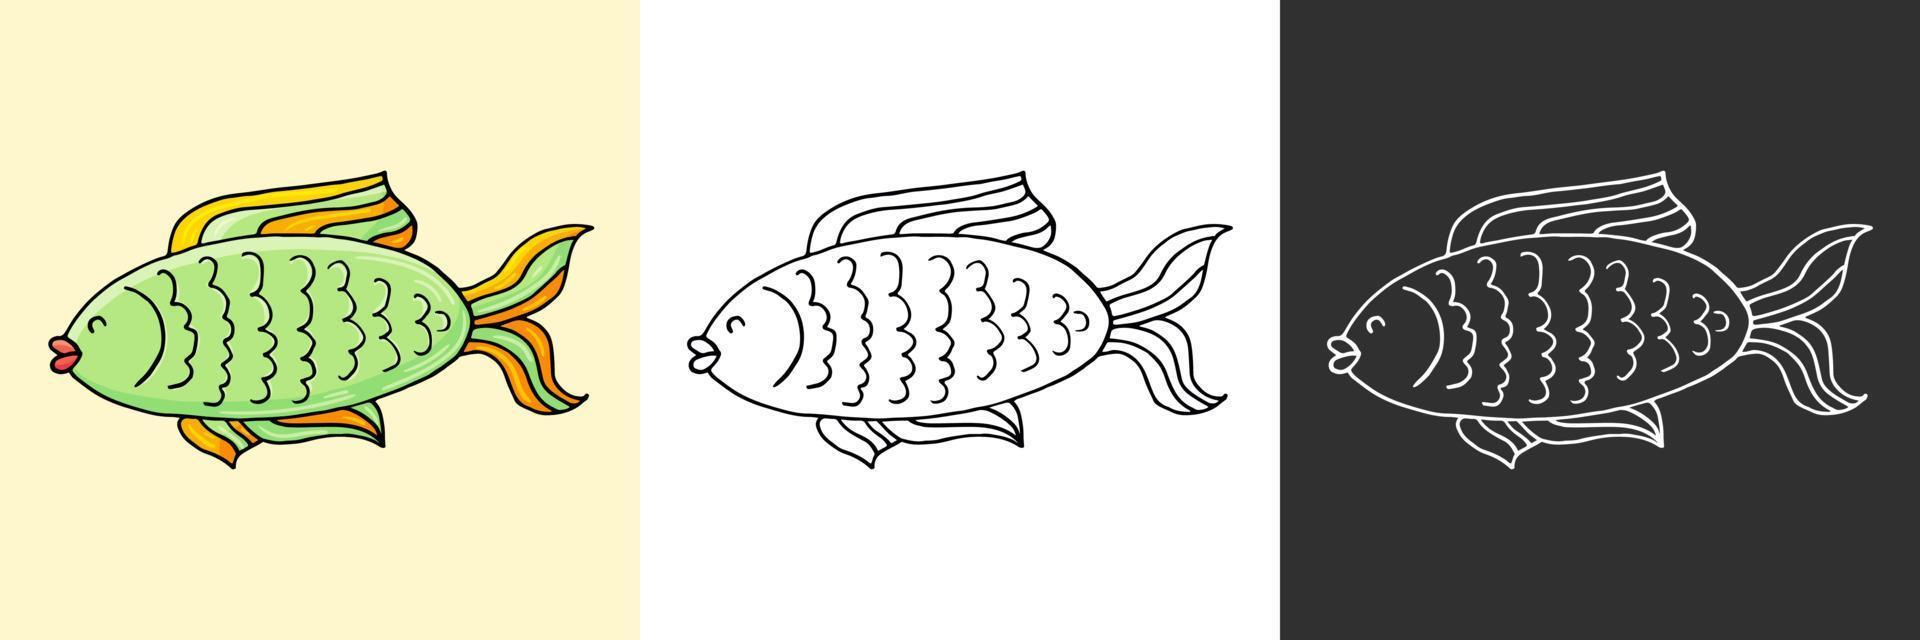 Symbol im Handzeichnungsstil. Liner-Abbildung. Sammlung von Zeichnungen zum Thema Marine vektor